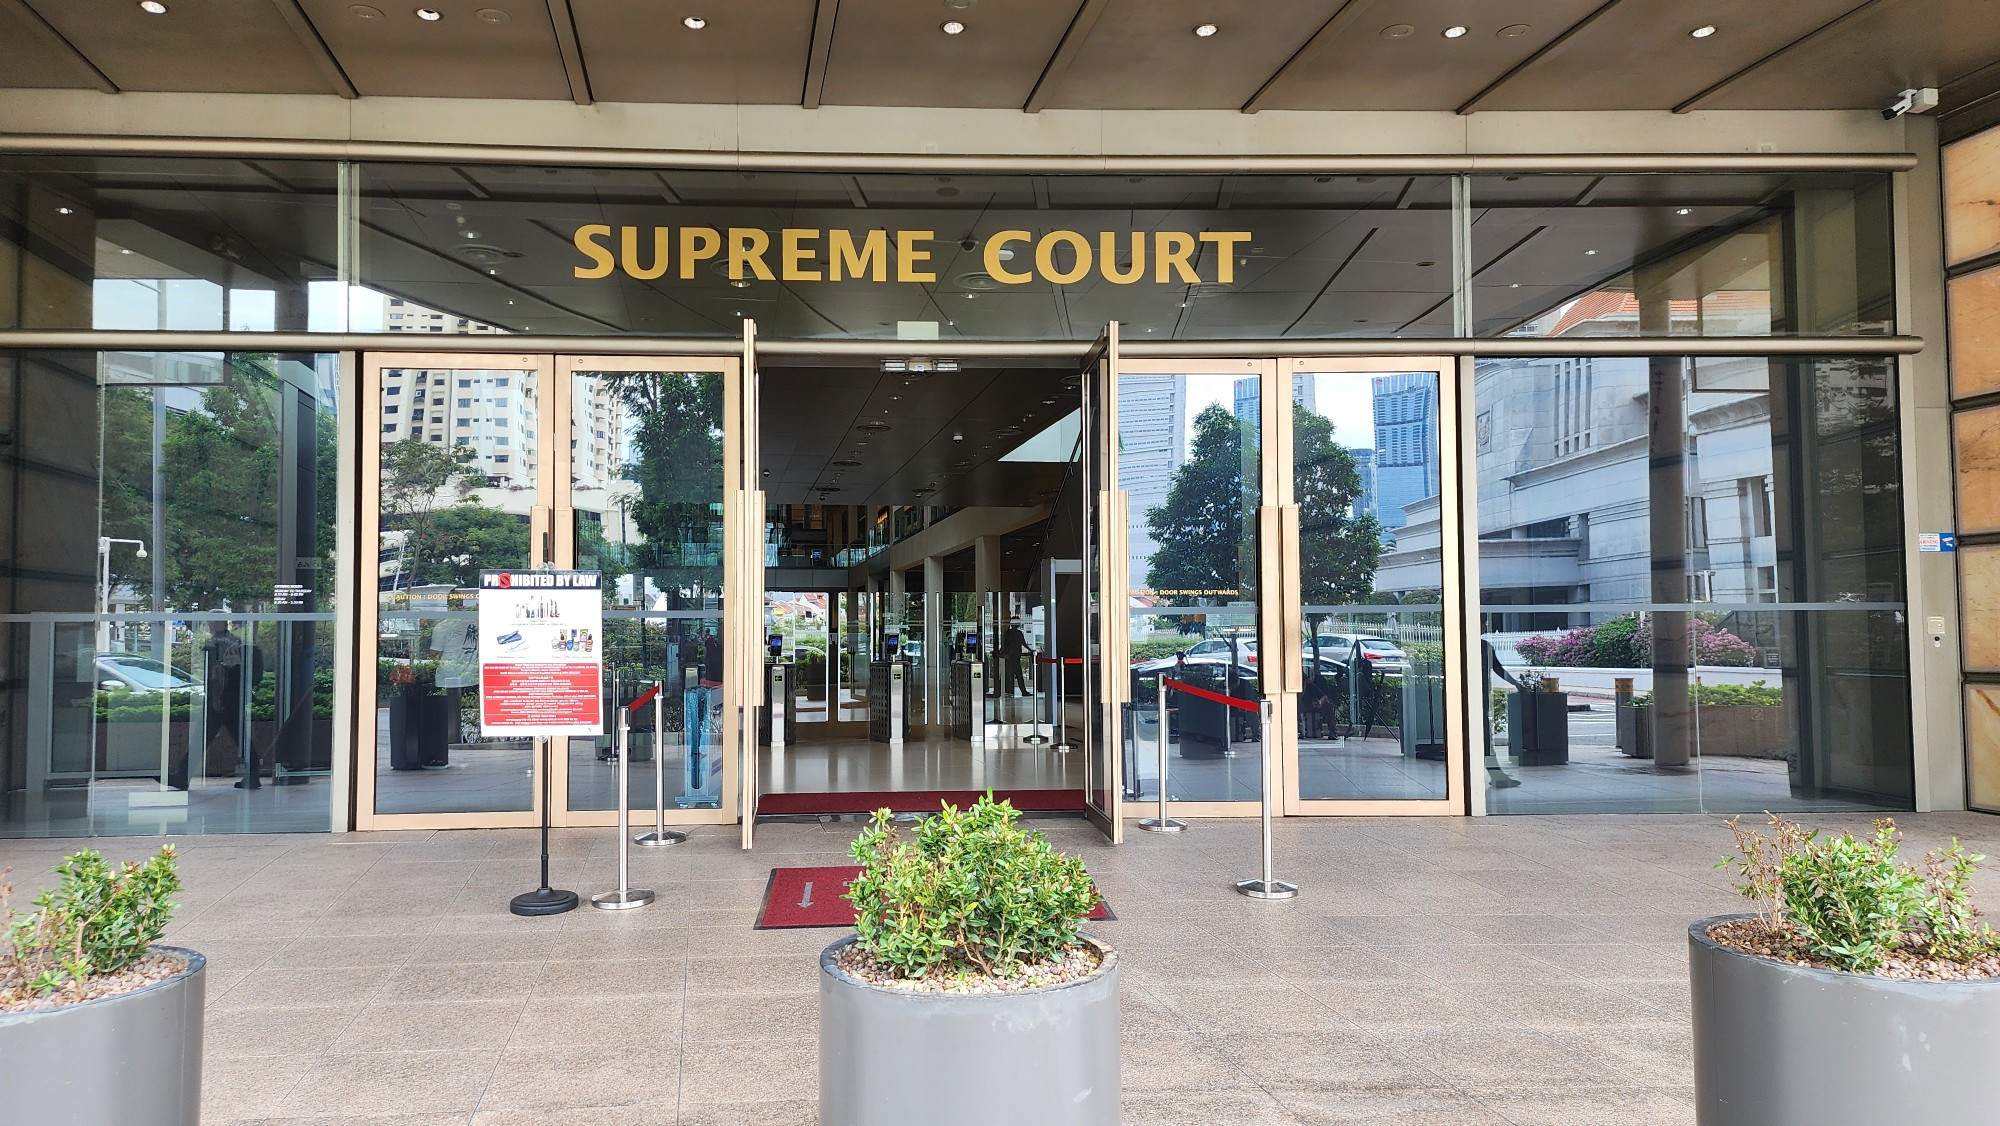 Supereme court of Singapore 